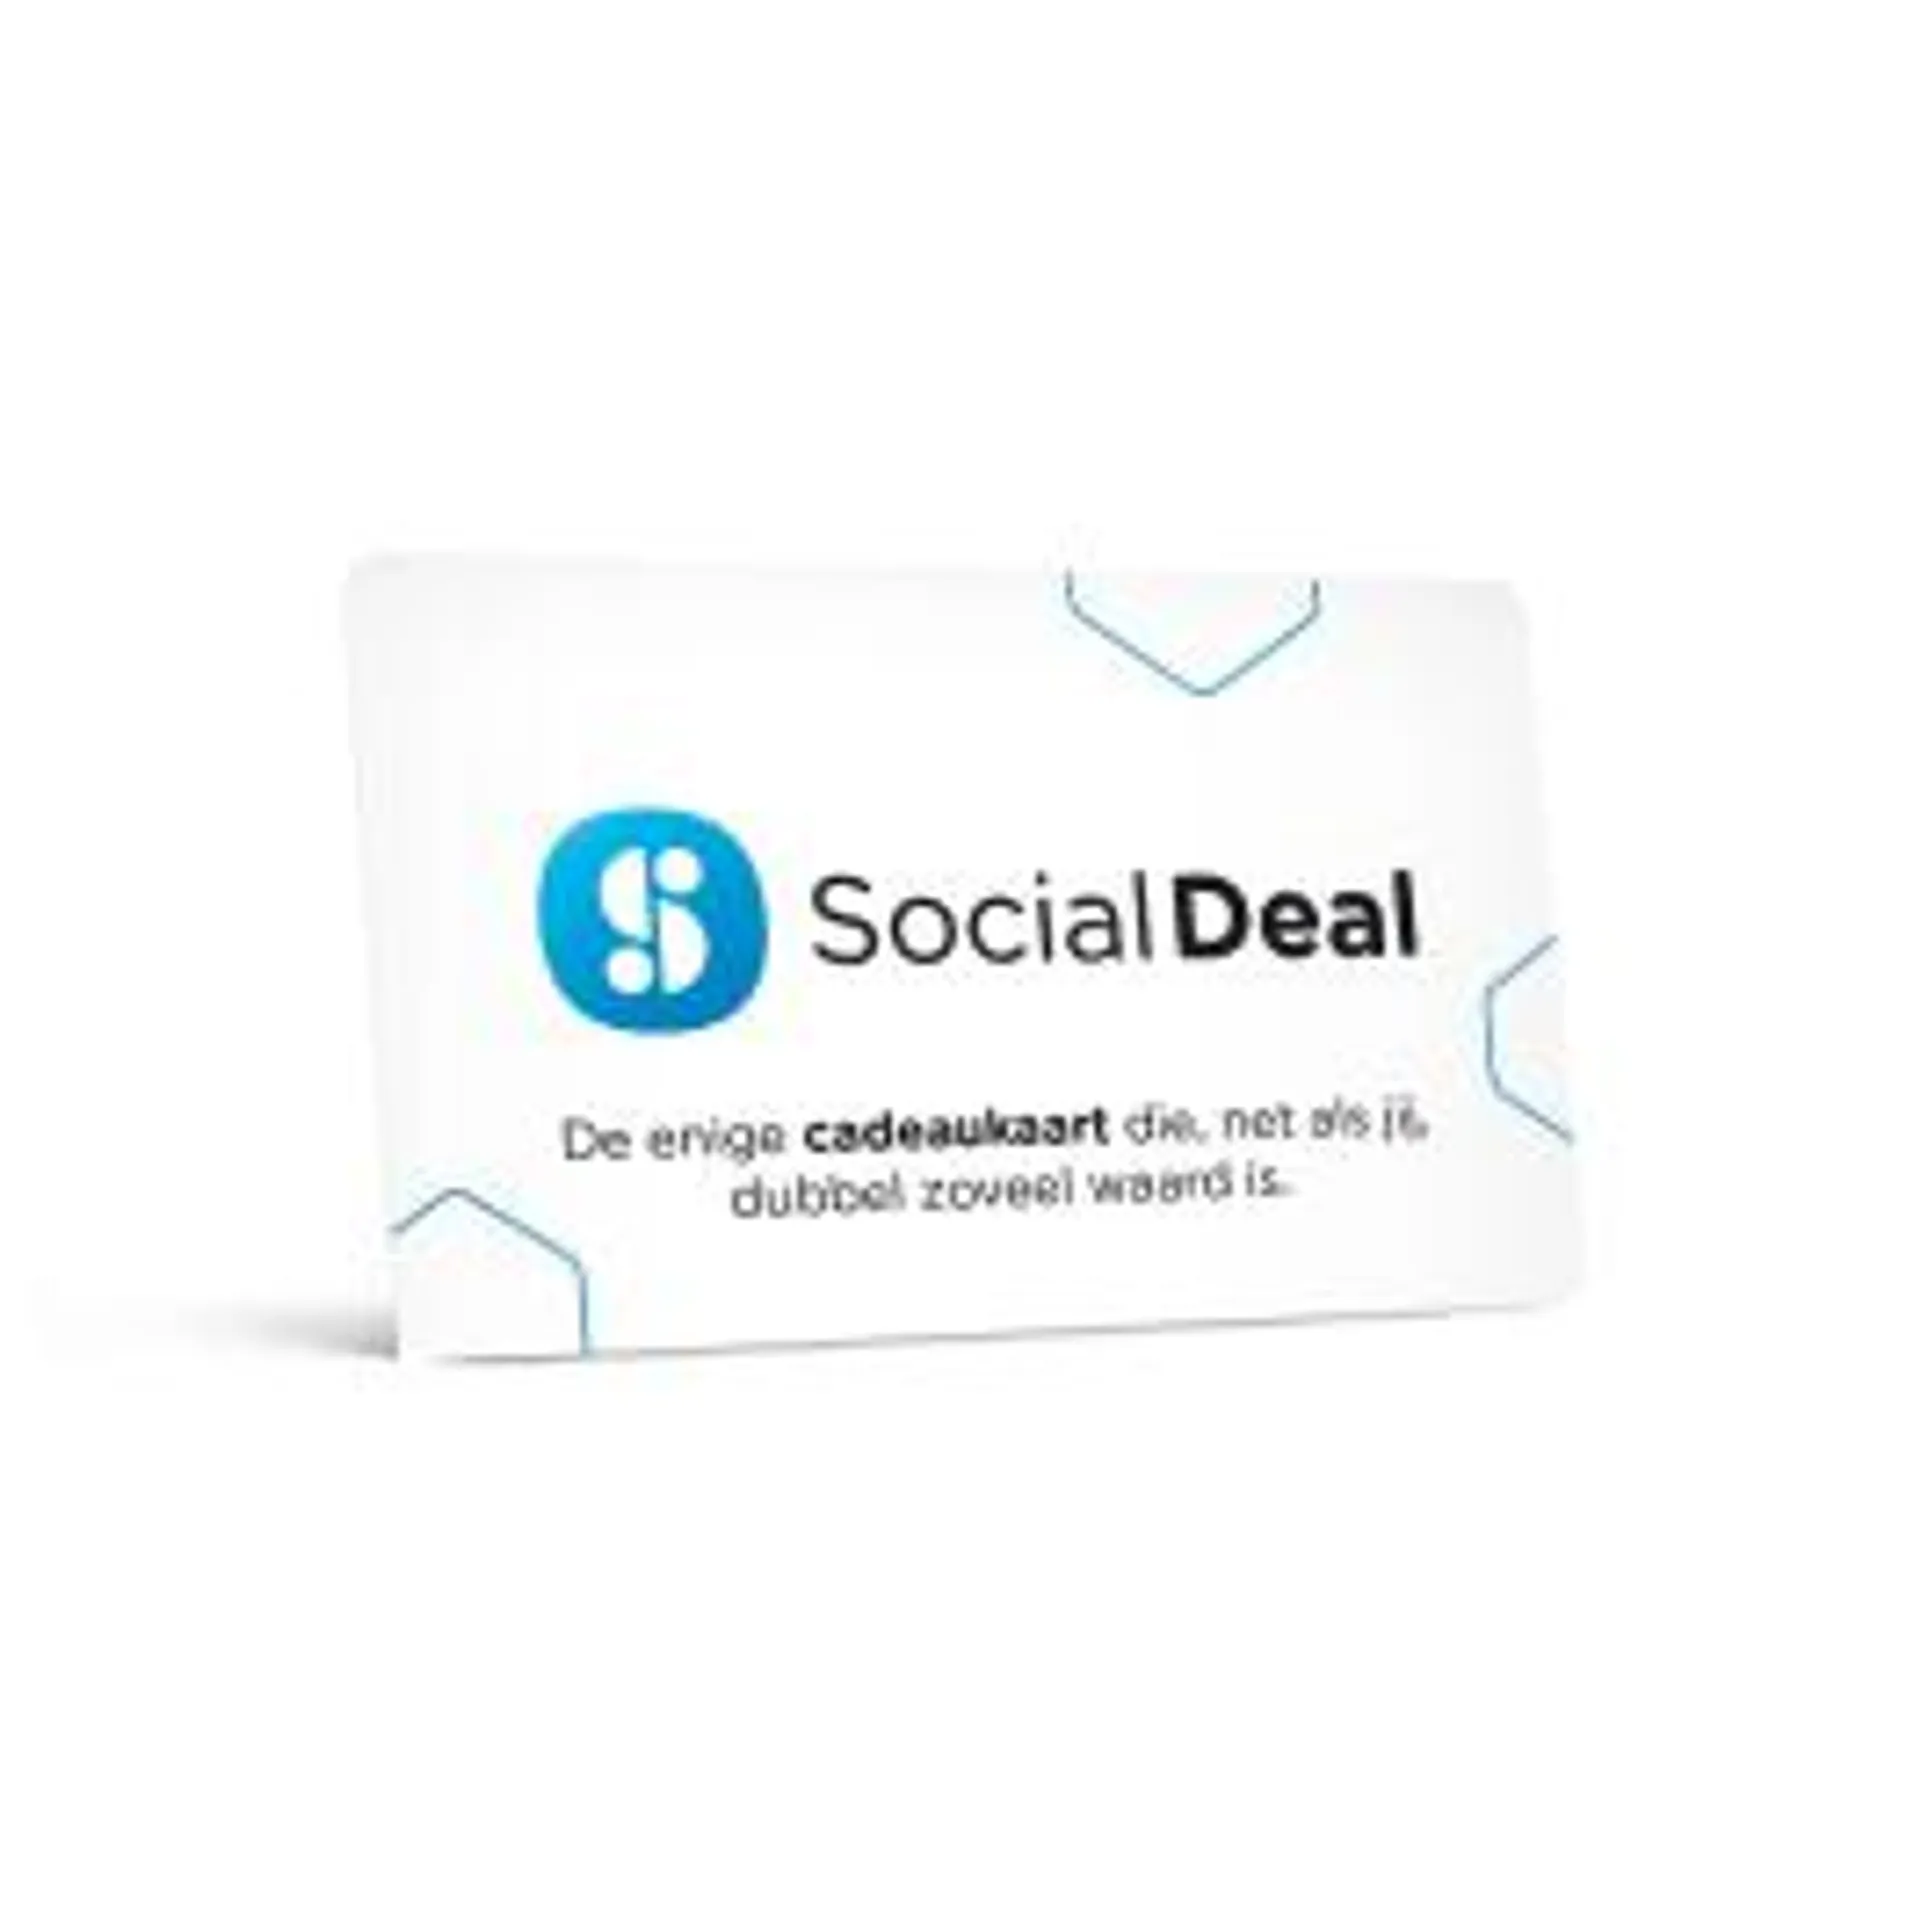 Social Deal cadeaukaart